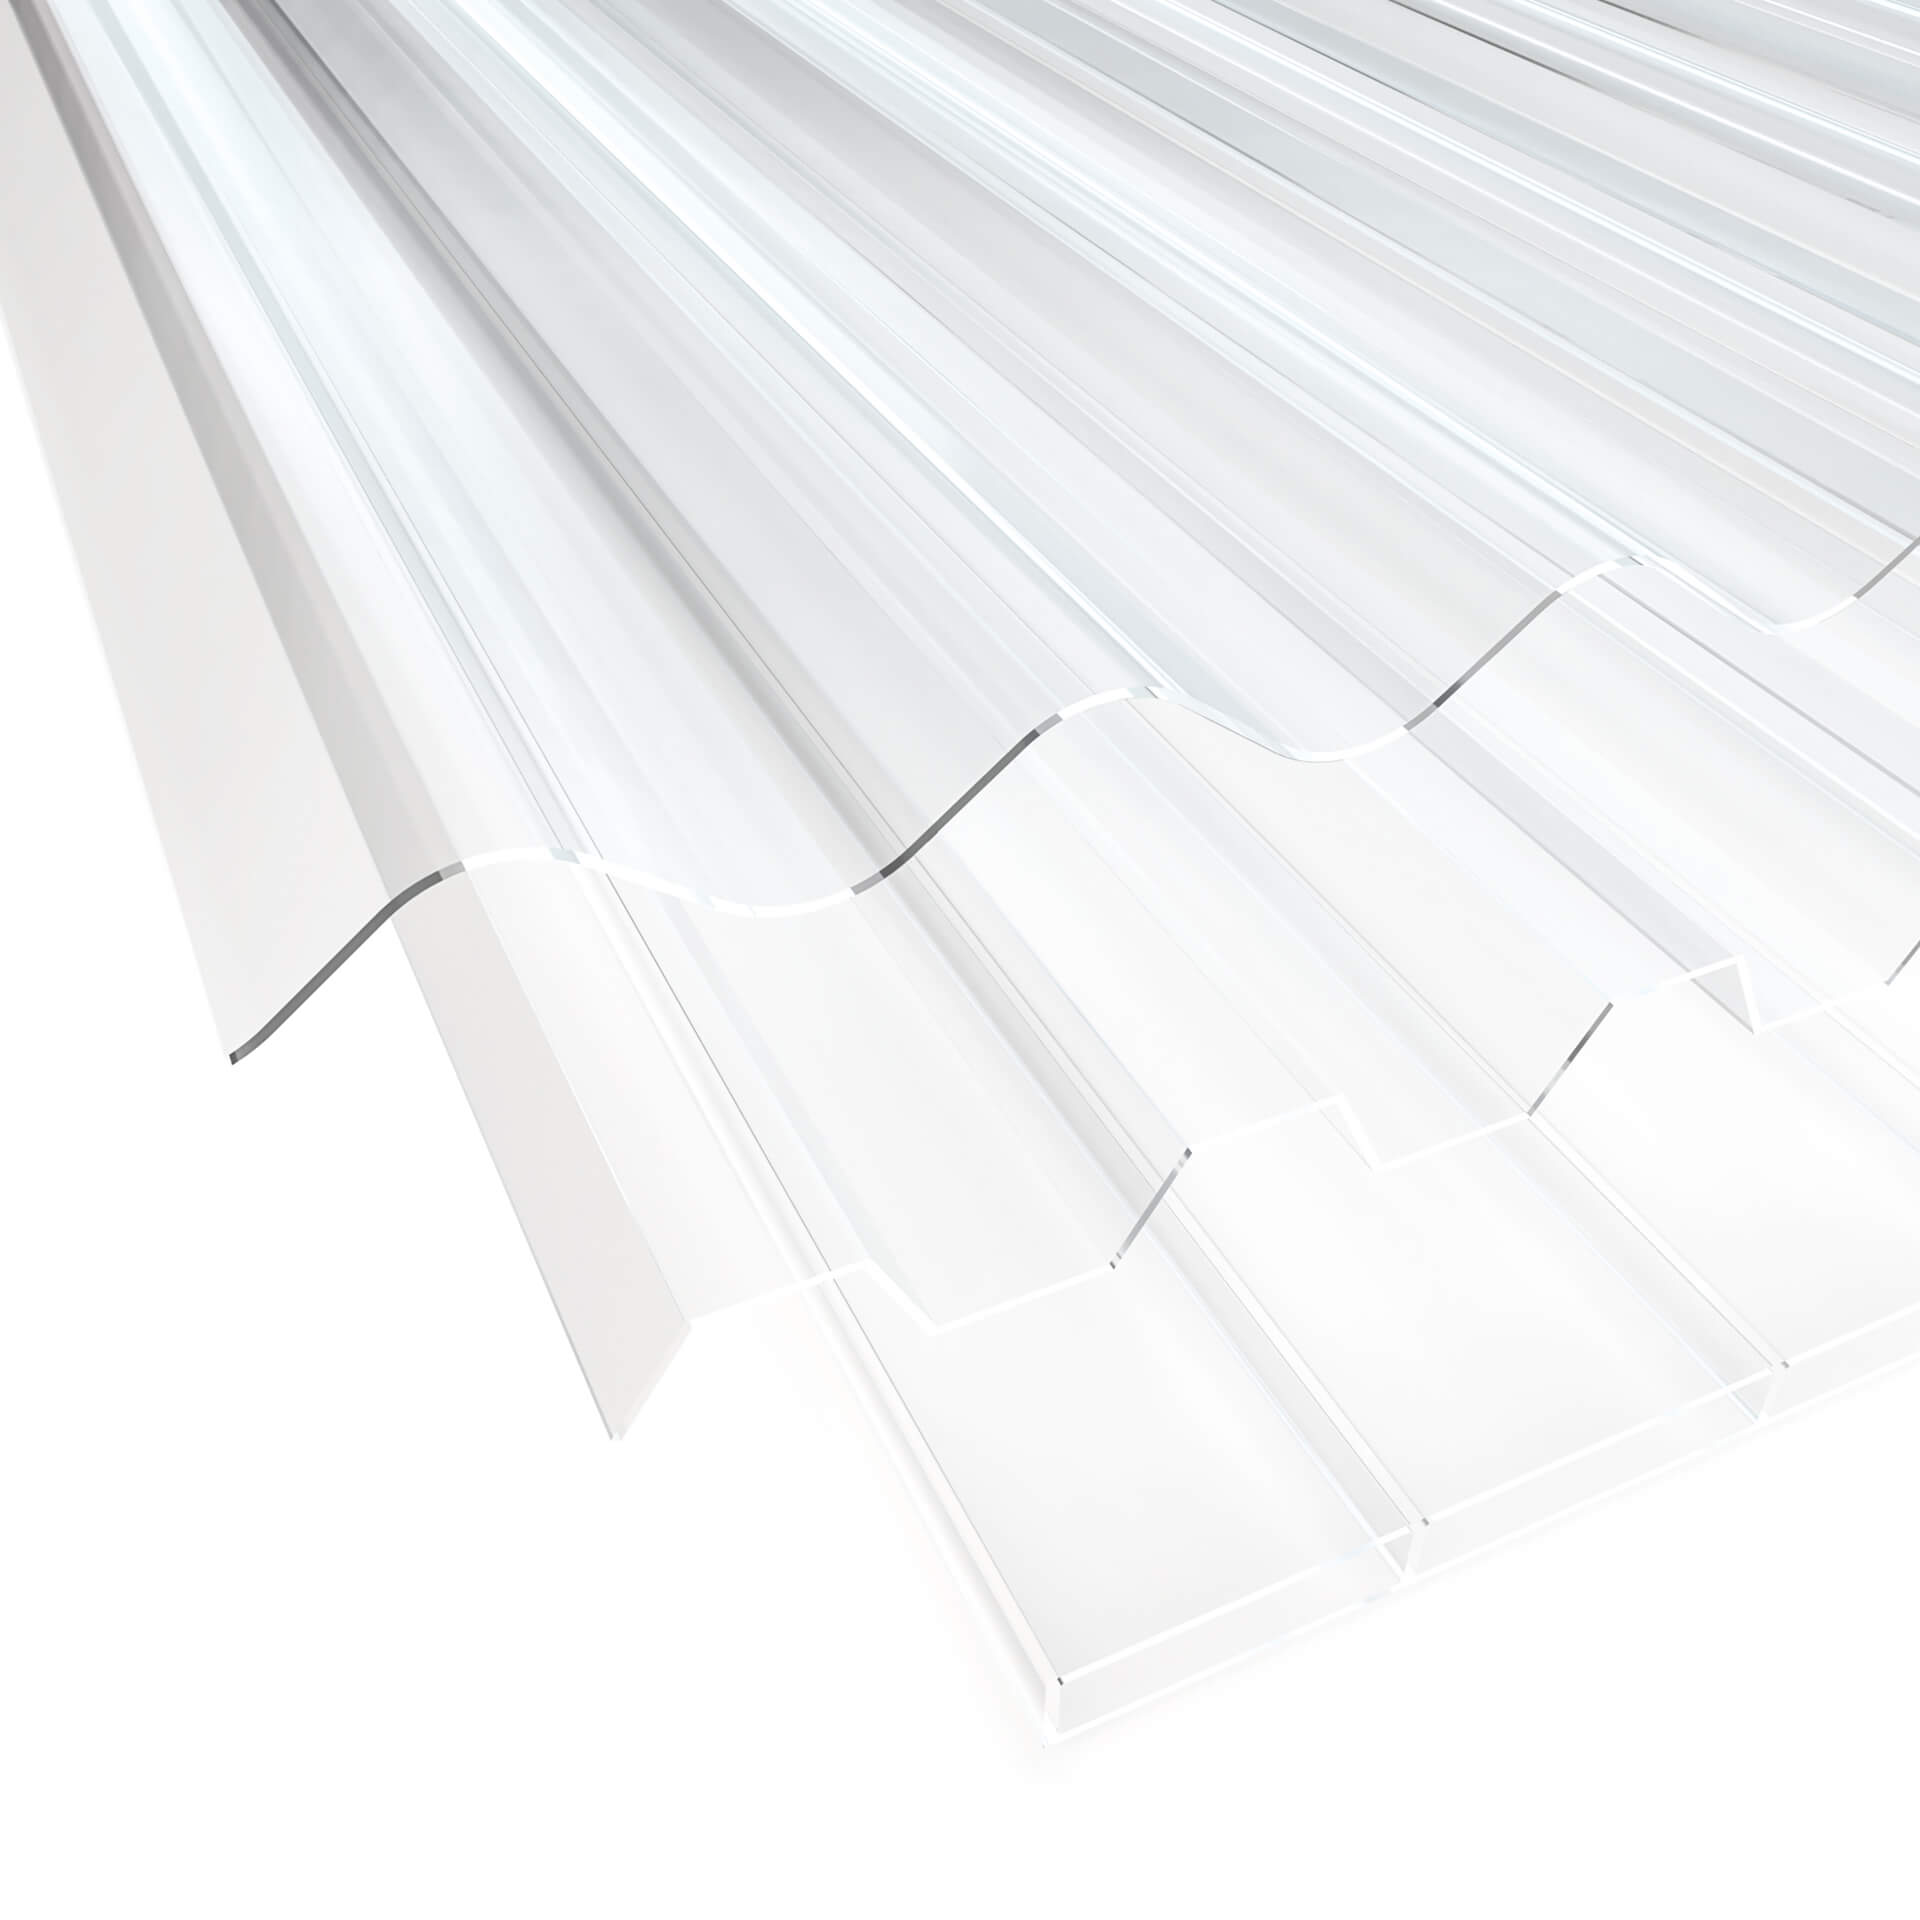 Dach- und Wandplaner für Einschalige VLF Lichtplatten aus PVC, Polycarbonat (PC) und Acrylglas (PMMA)